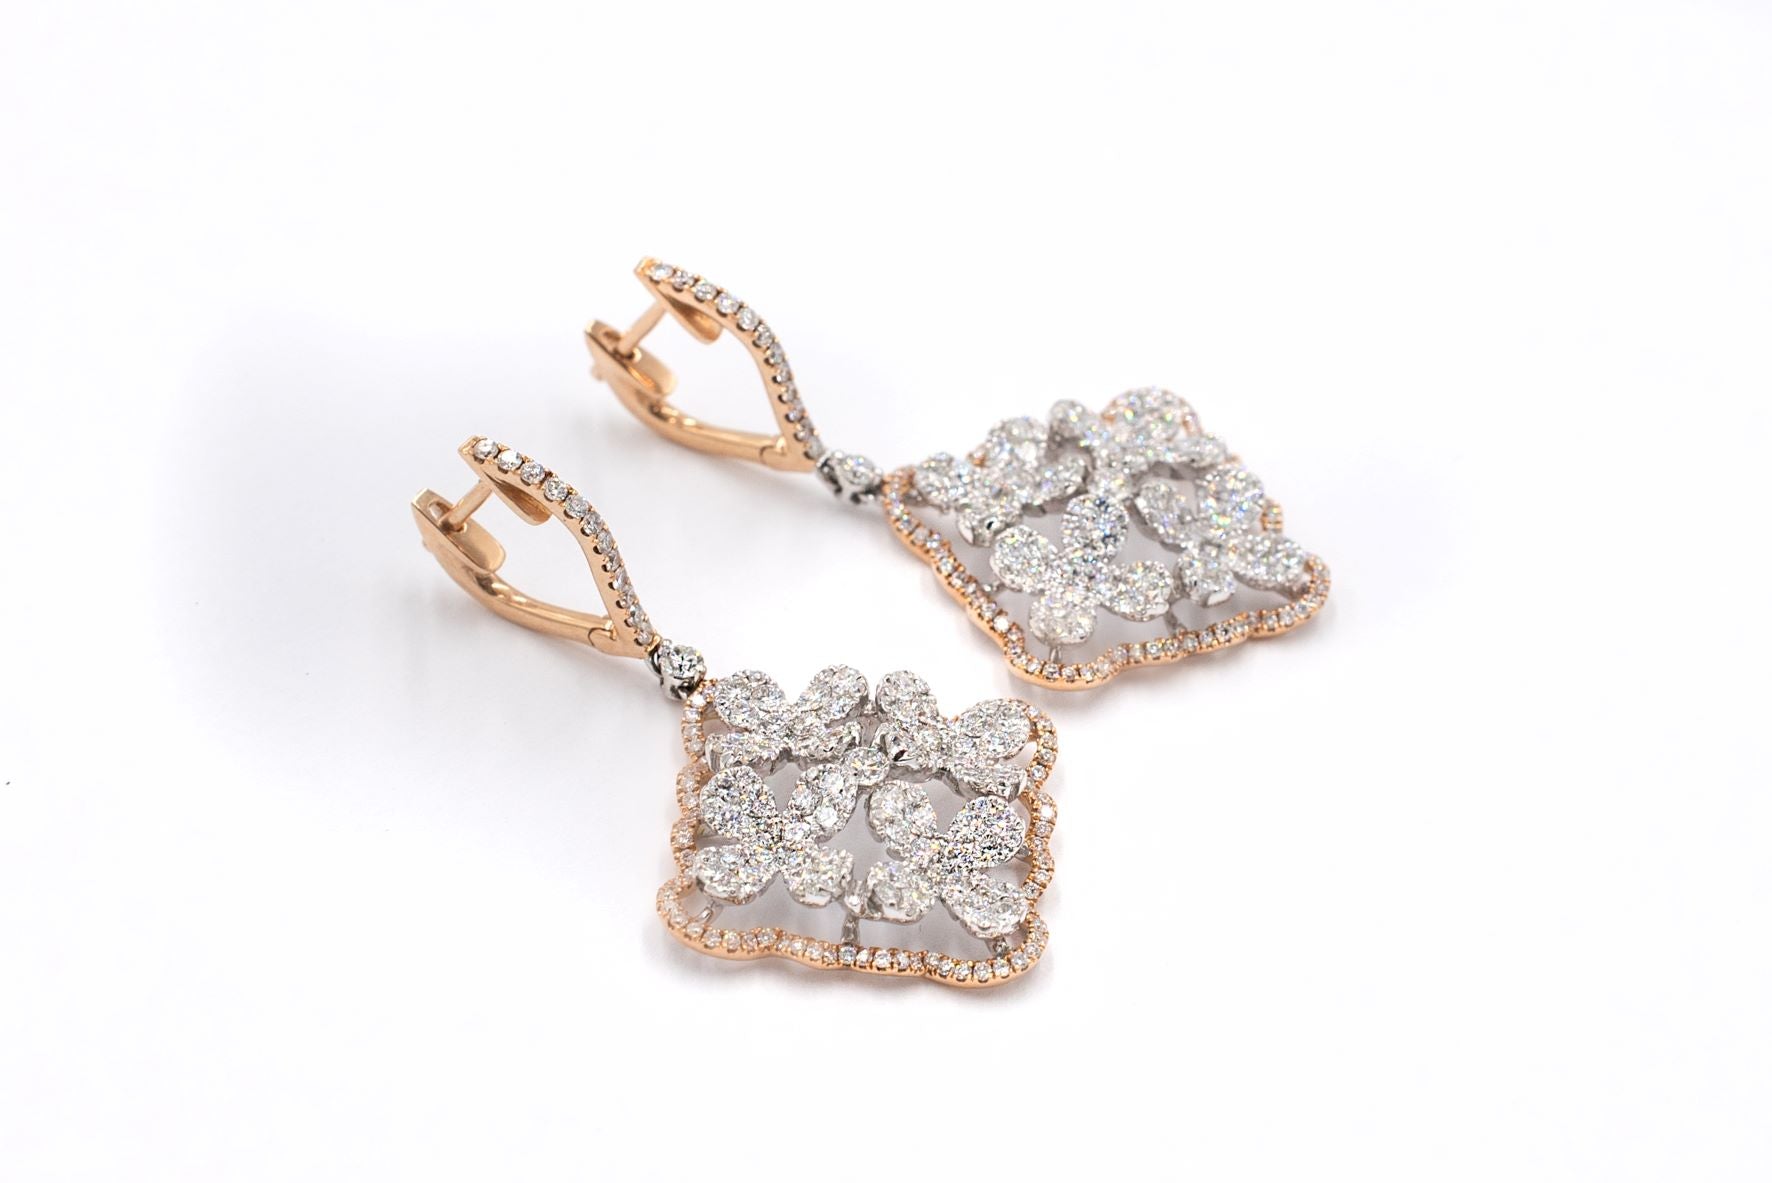 3 1/3 ctw Diamond Flower Earrings